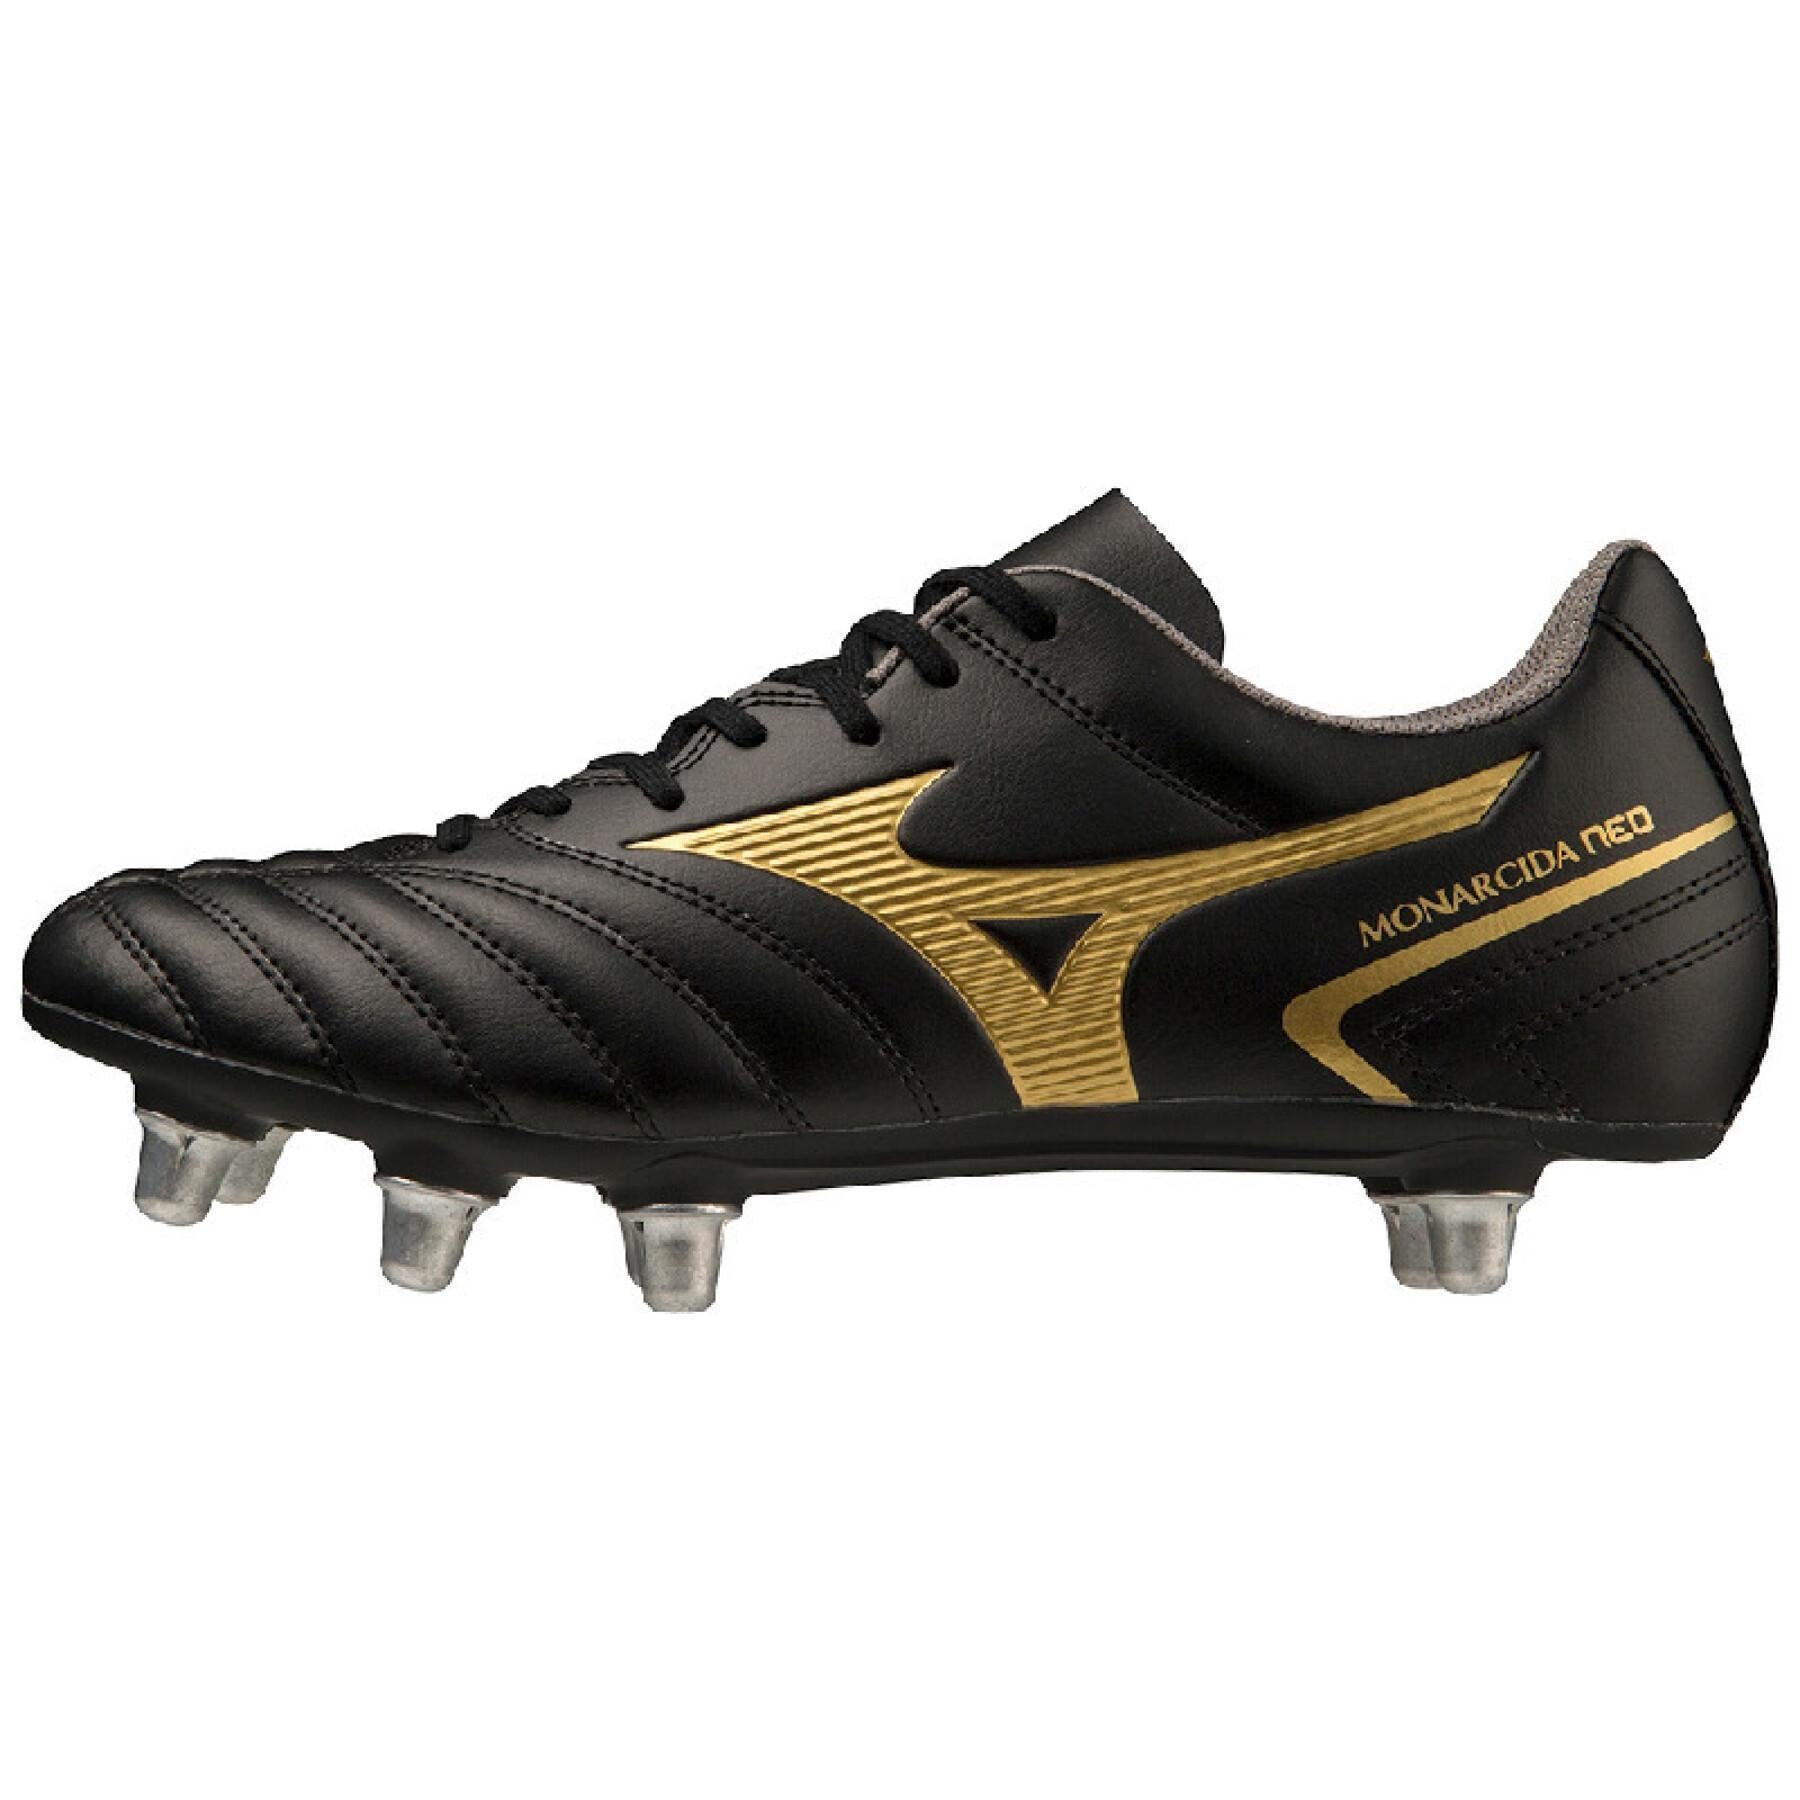 Mizuno Adults Monarcida Neo II Rugby Boots - Black/Gold